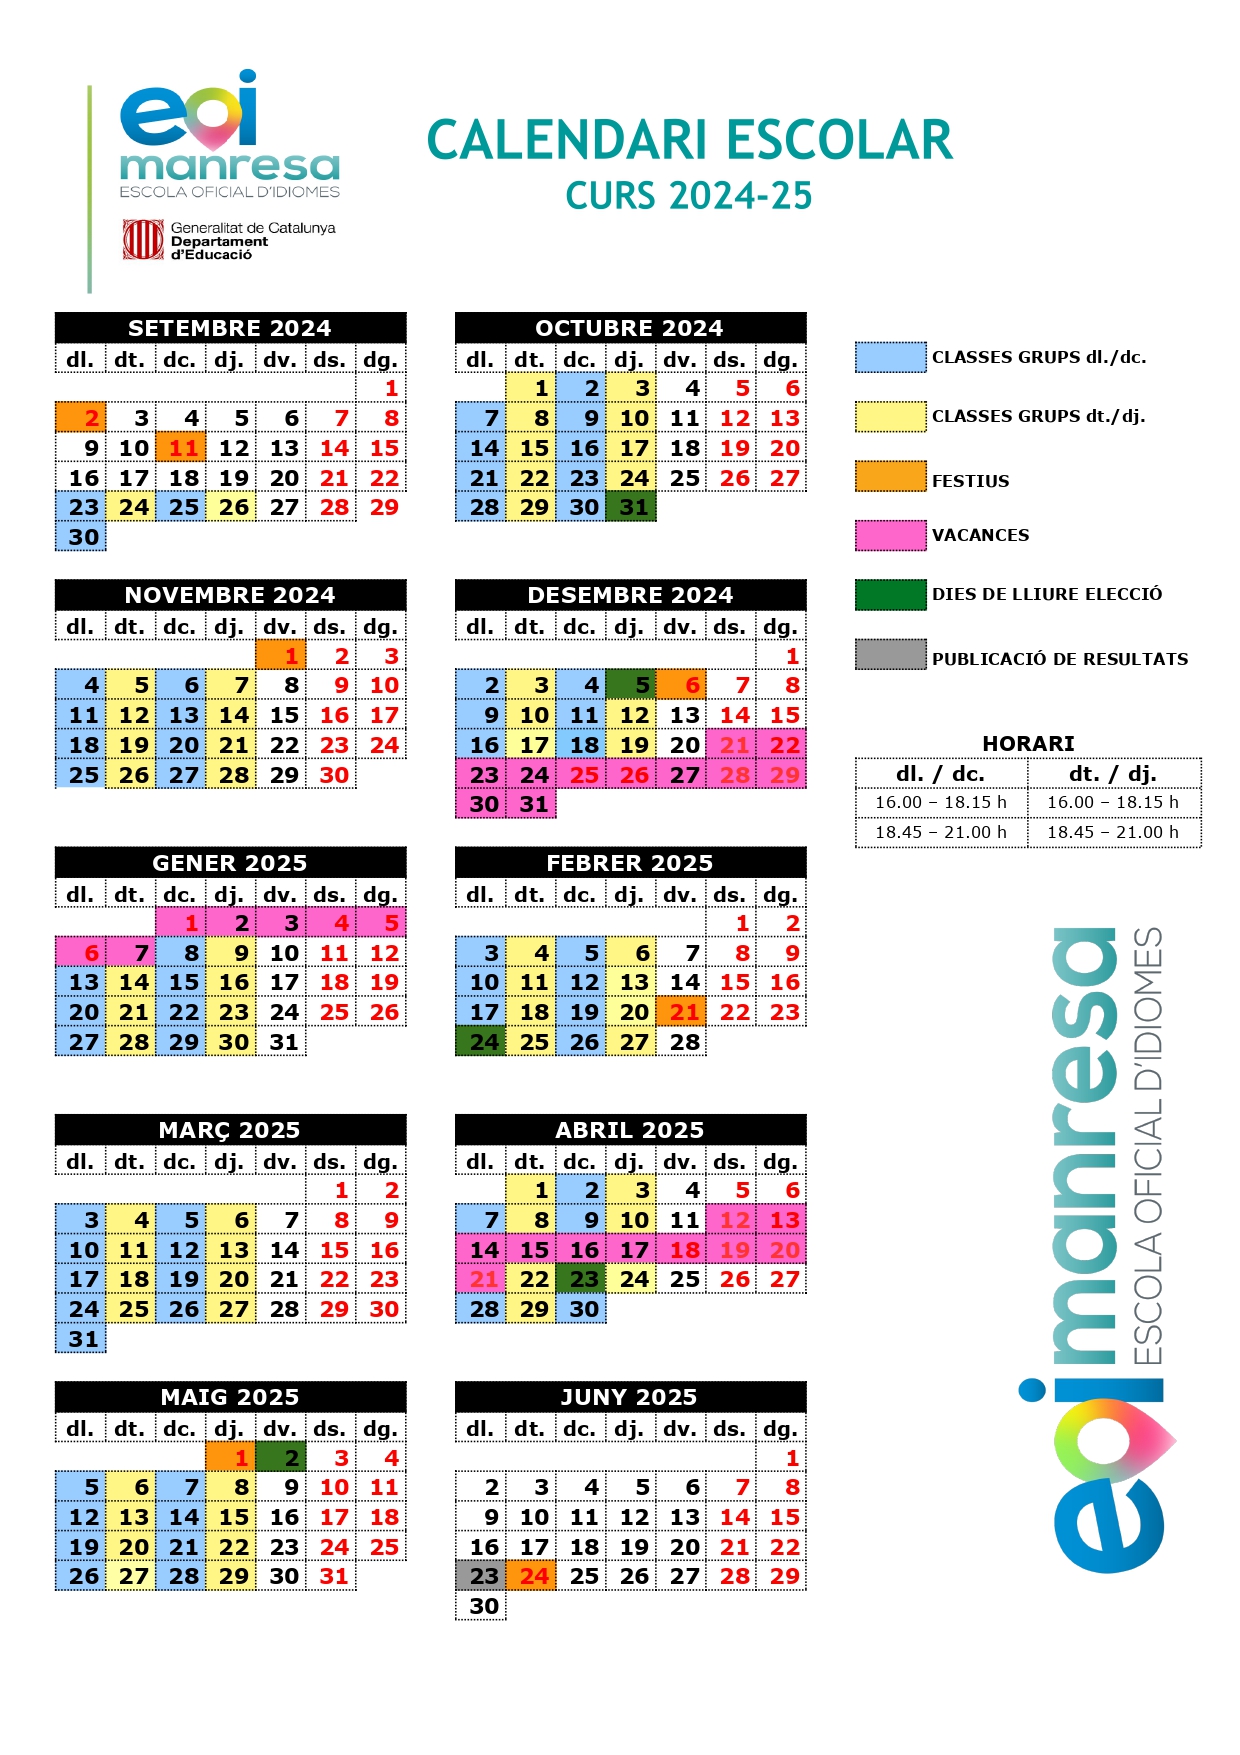 Calendari escolar 2024-25 EOI Manresa